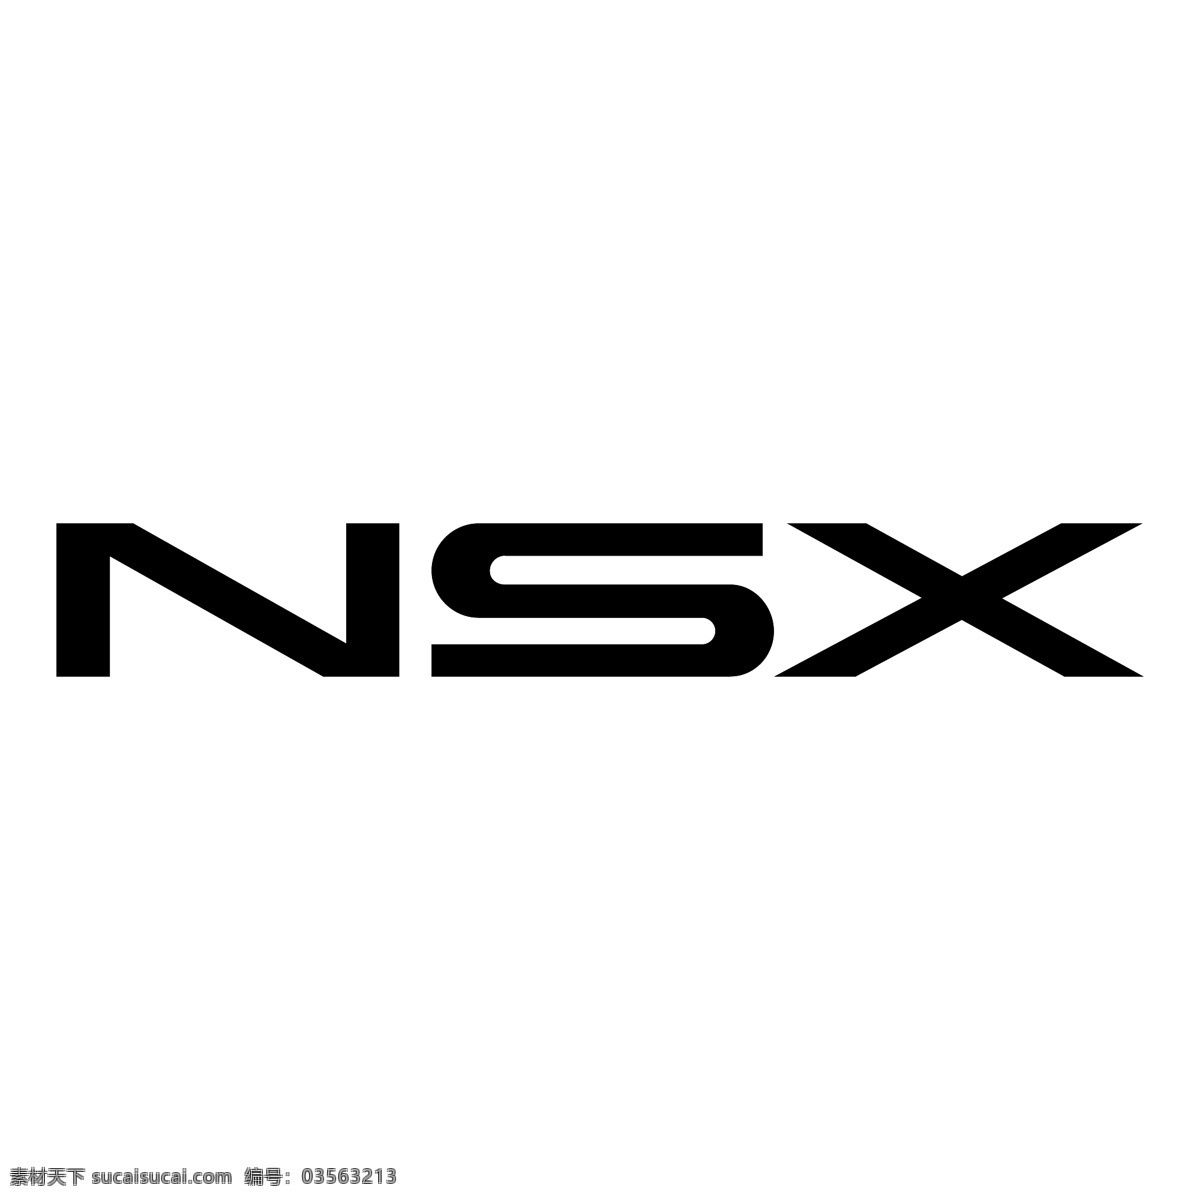 讴歌nsx 讴歌 向量 极品 标志的讴歌 logo 矢量 acura 讴歌png 讴歌汽车矢量 经典 经典极品 车 矢量图 建筑家居